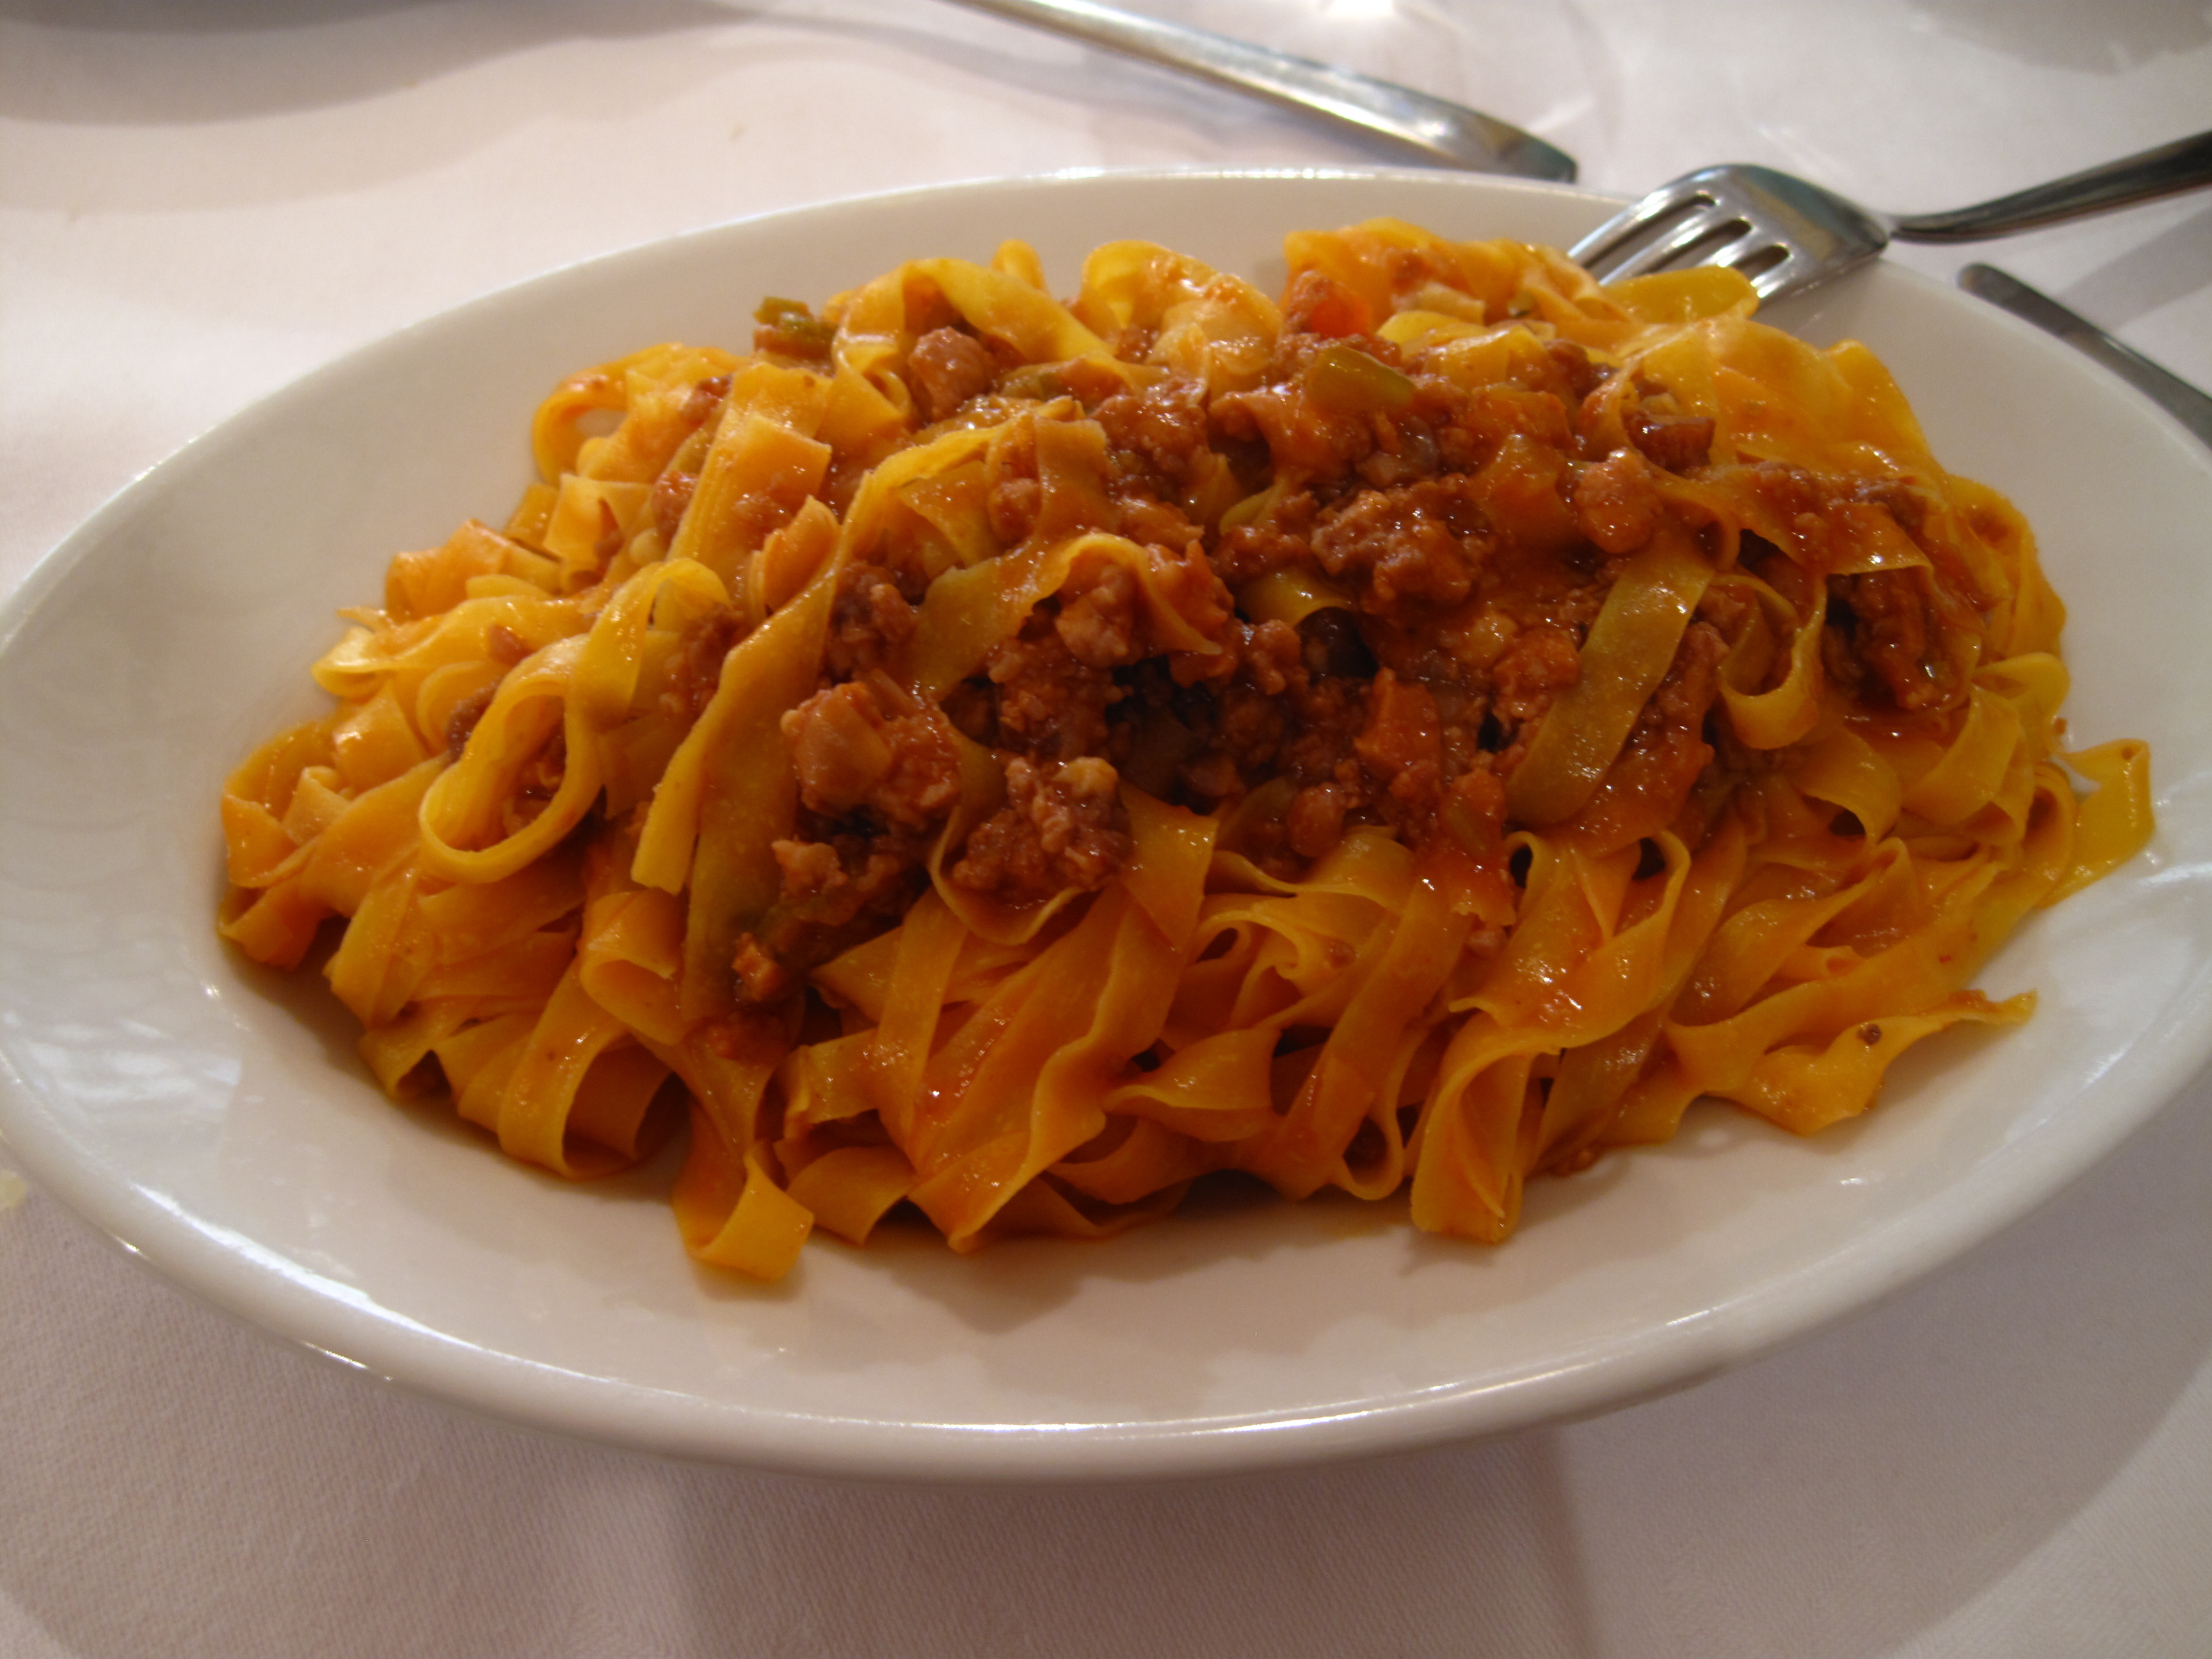 The Best of Bologna: spaghetti versus tagliatelle